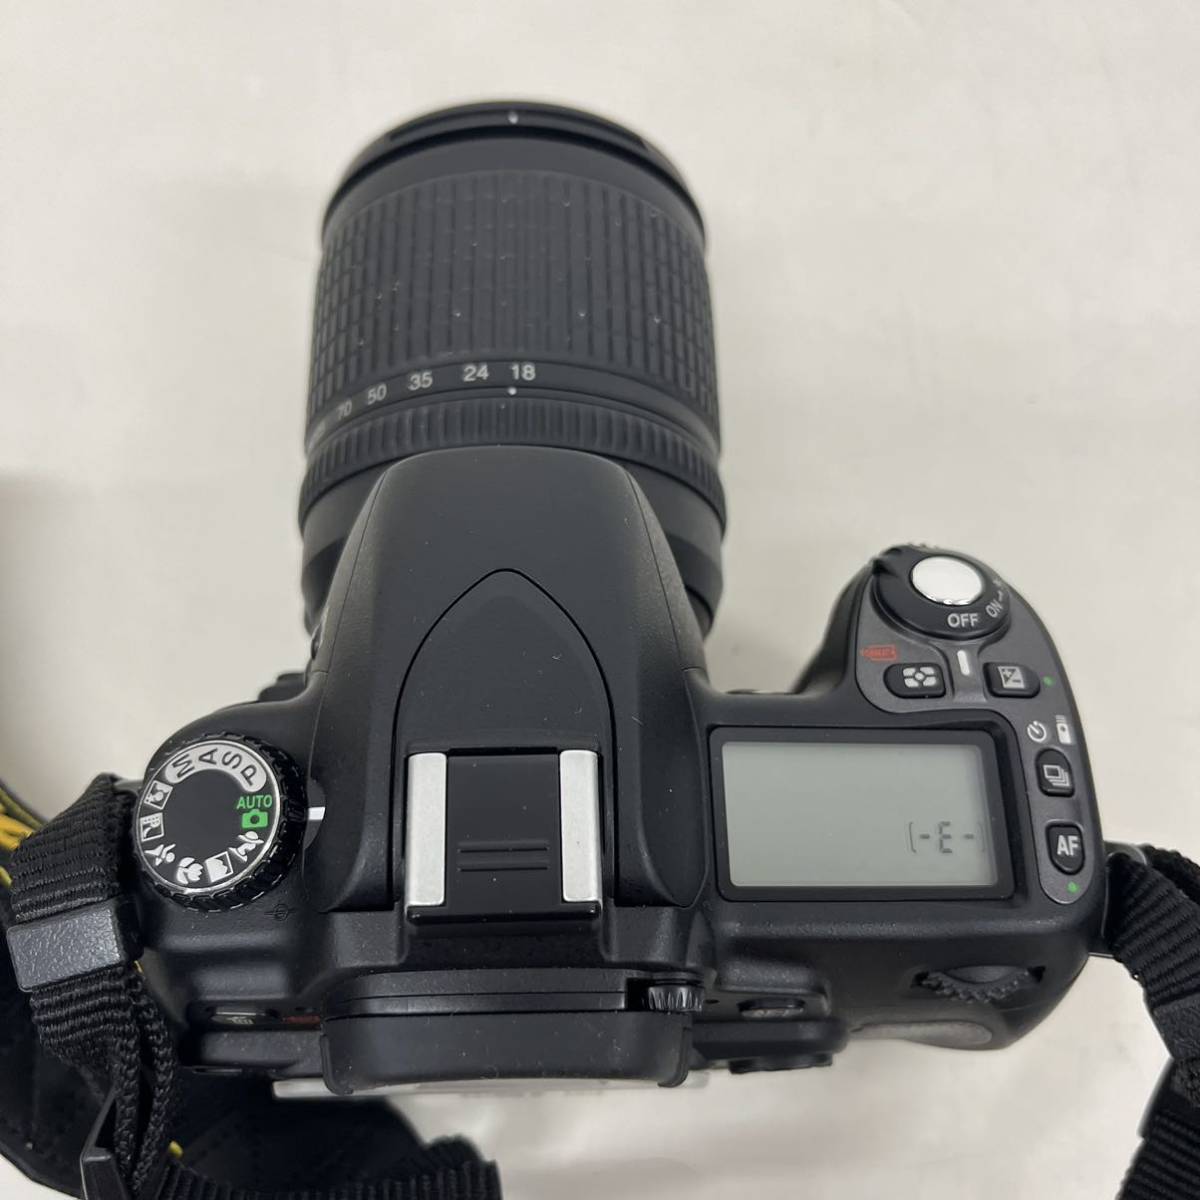 Nikon ニコン デジタル一眼レフカメラ D80 ストラップ付き レンズ AF-S NIKKOR 18-135mm 1:3.5-5.6G ED ケース付き _画像5